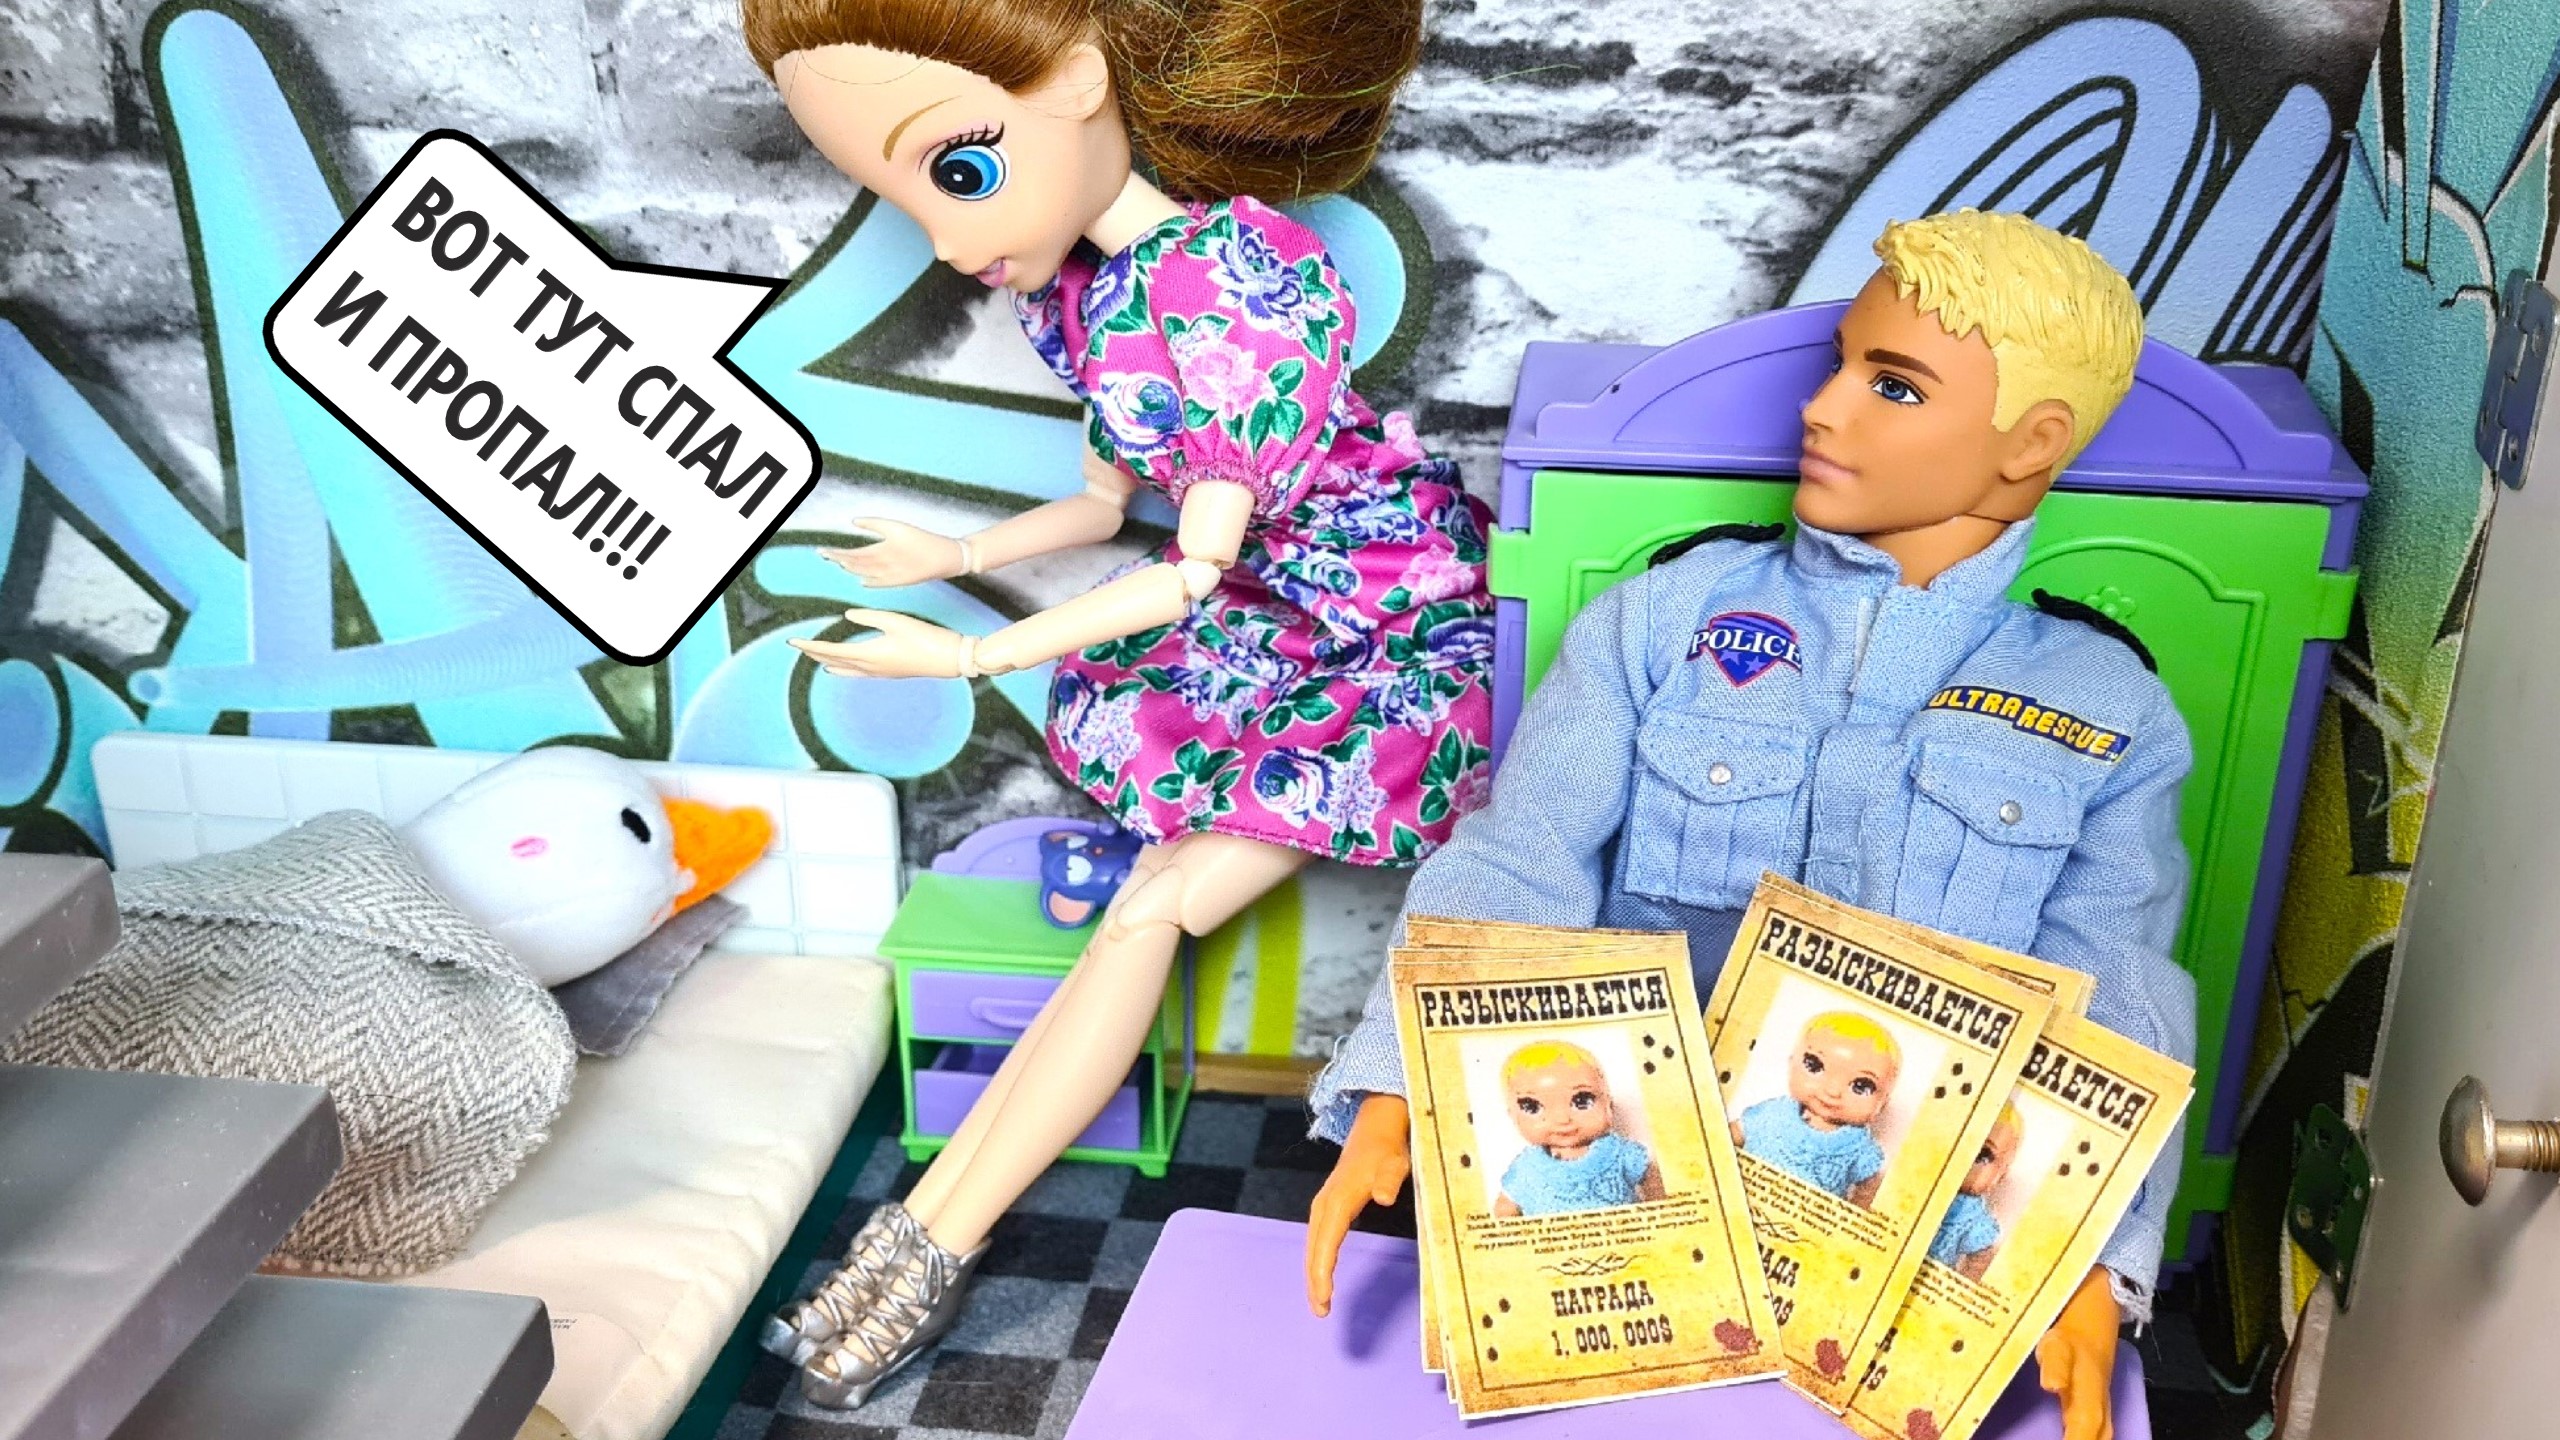 СПАЛ И ПРОПАЛ😲😱😡 Катя и Макс веселая семейка! Смешные куклы Барби и ЛОЛ истории Даринелка ТВ